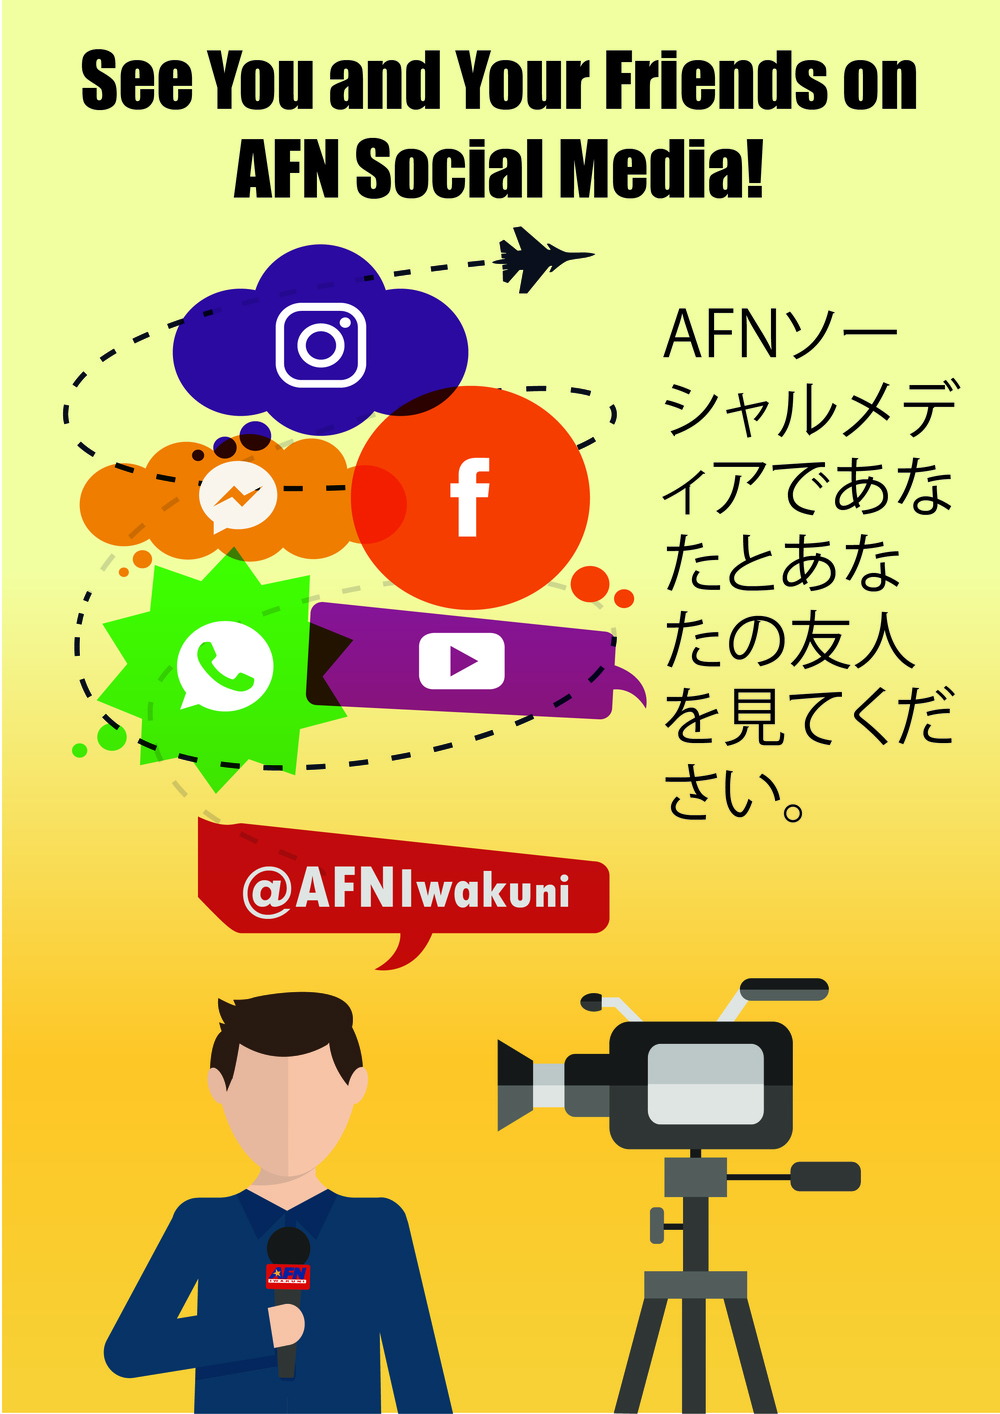 AFN Social Media